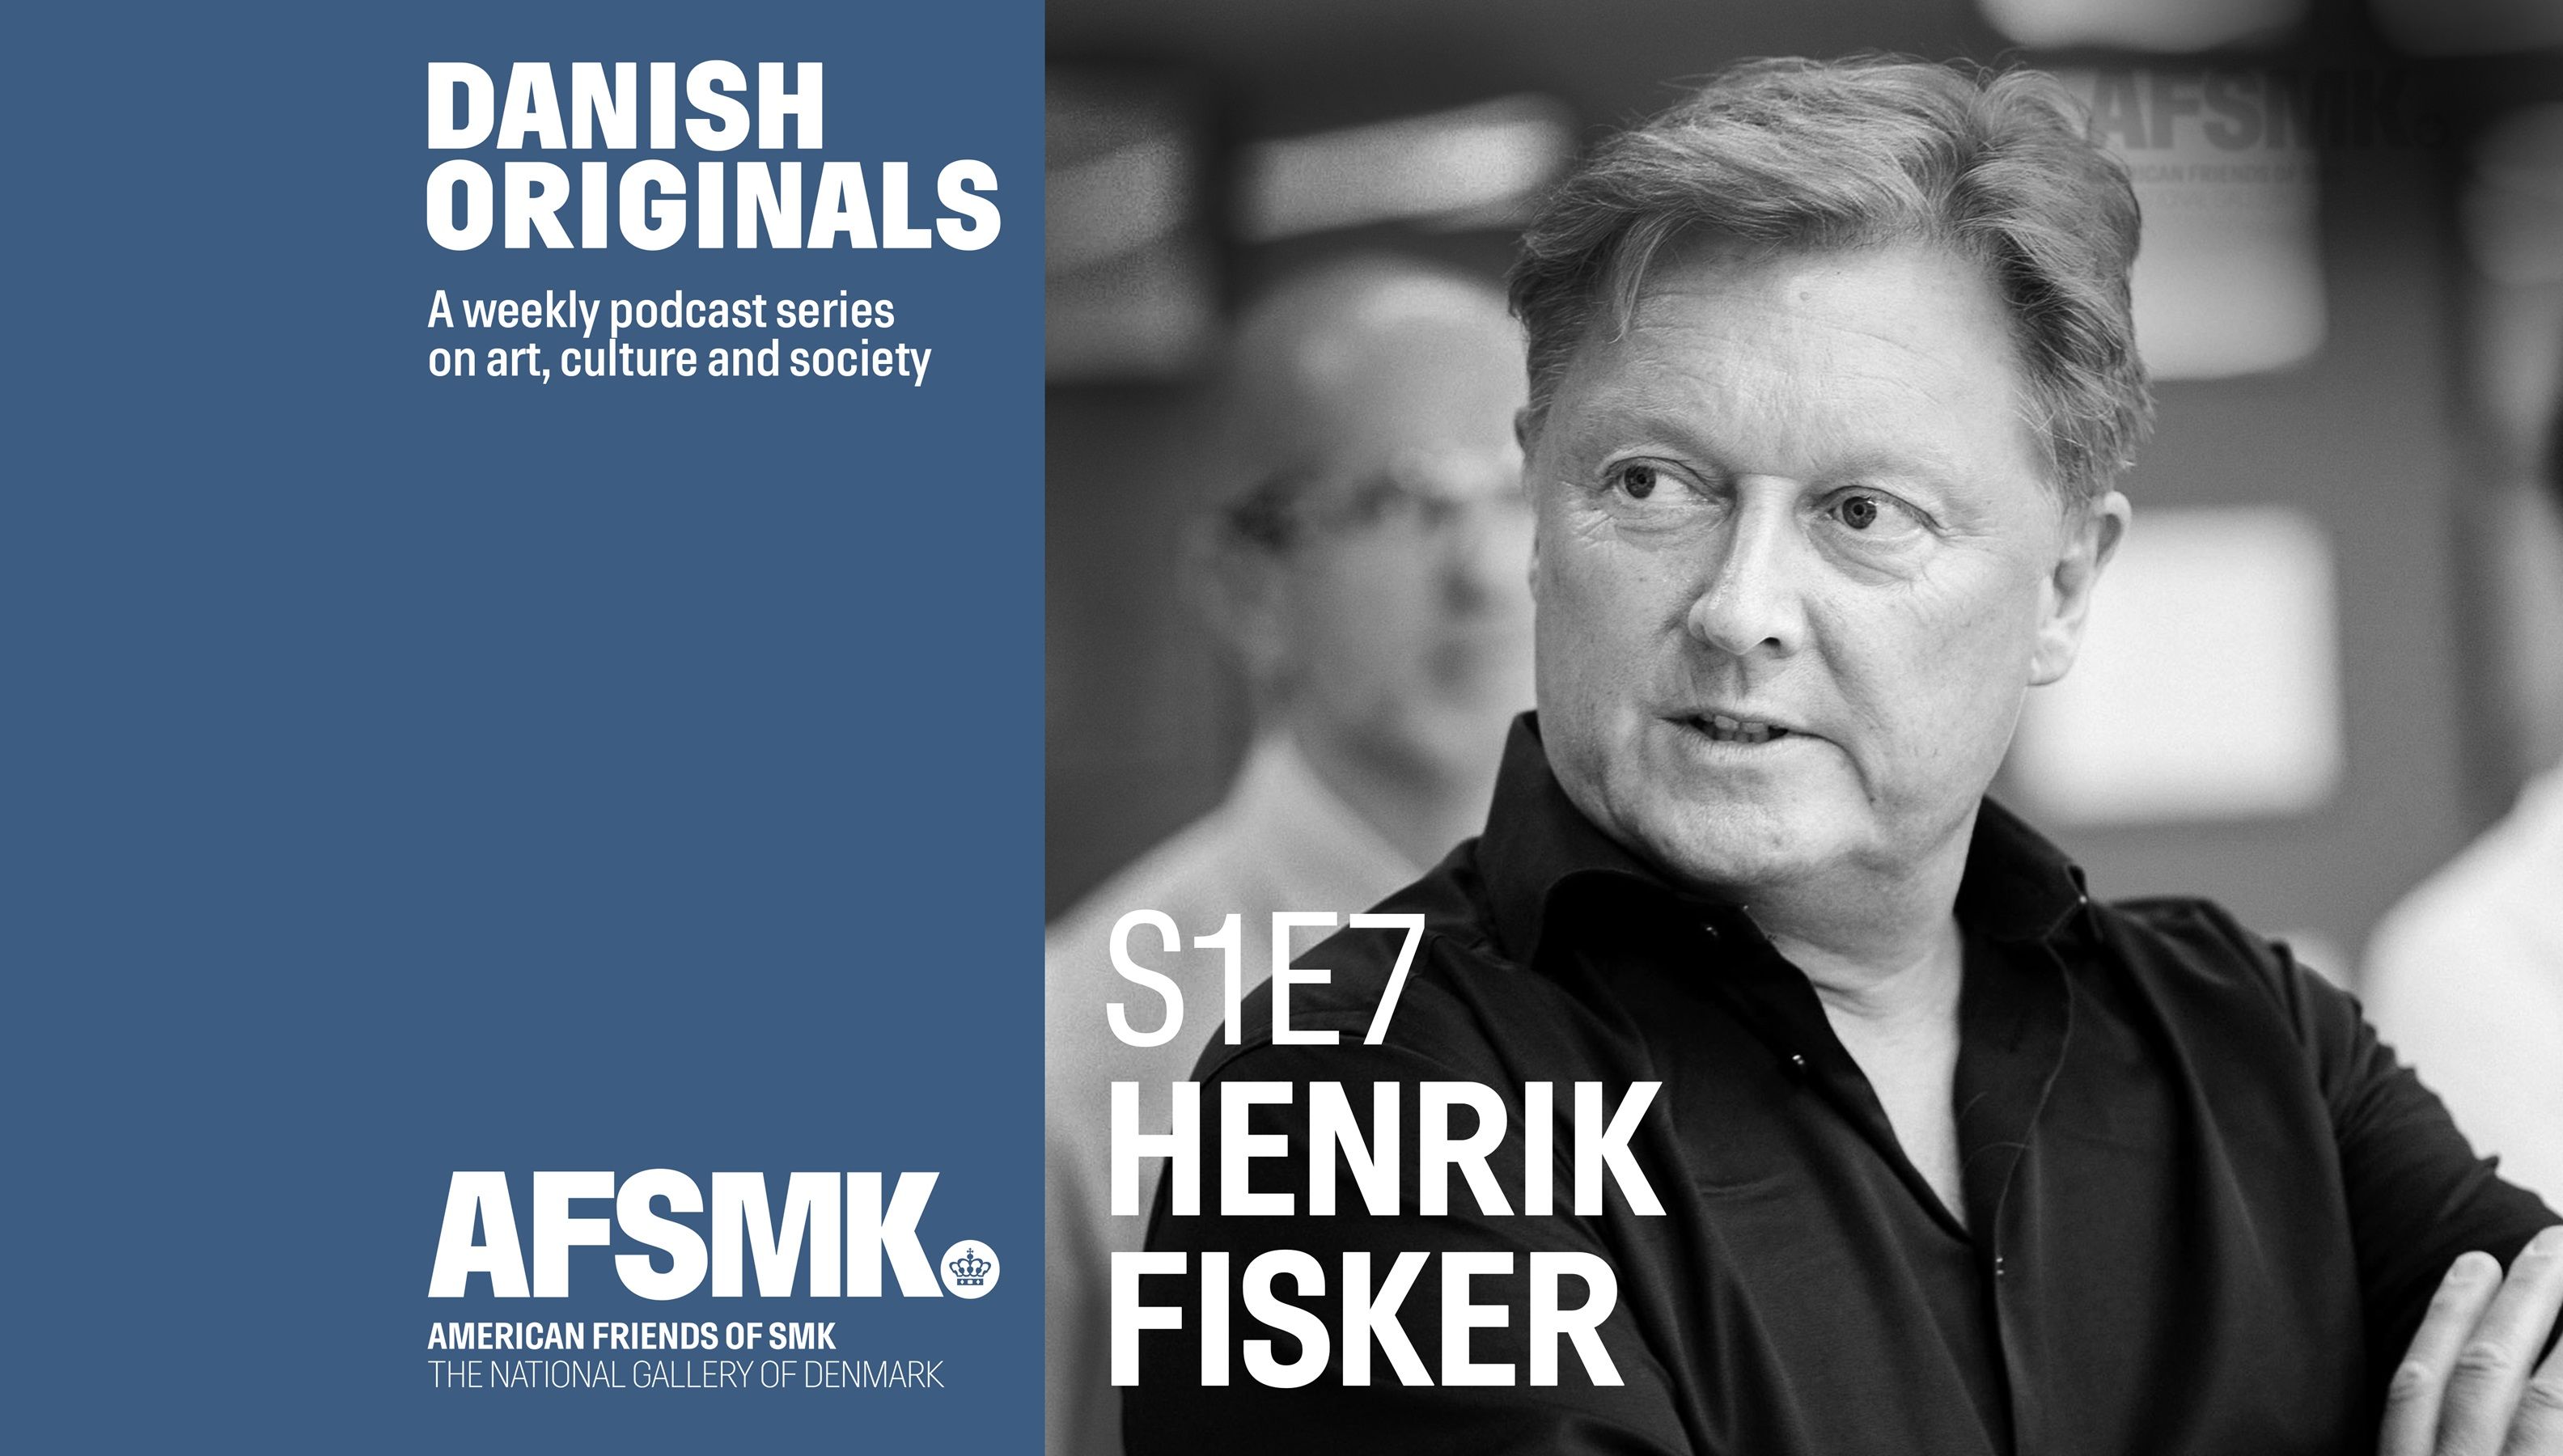 Danish Originals S1 E7: Henrik Fisker